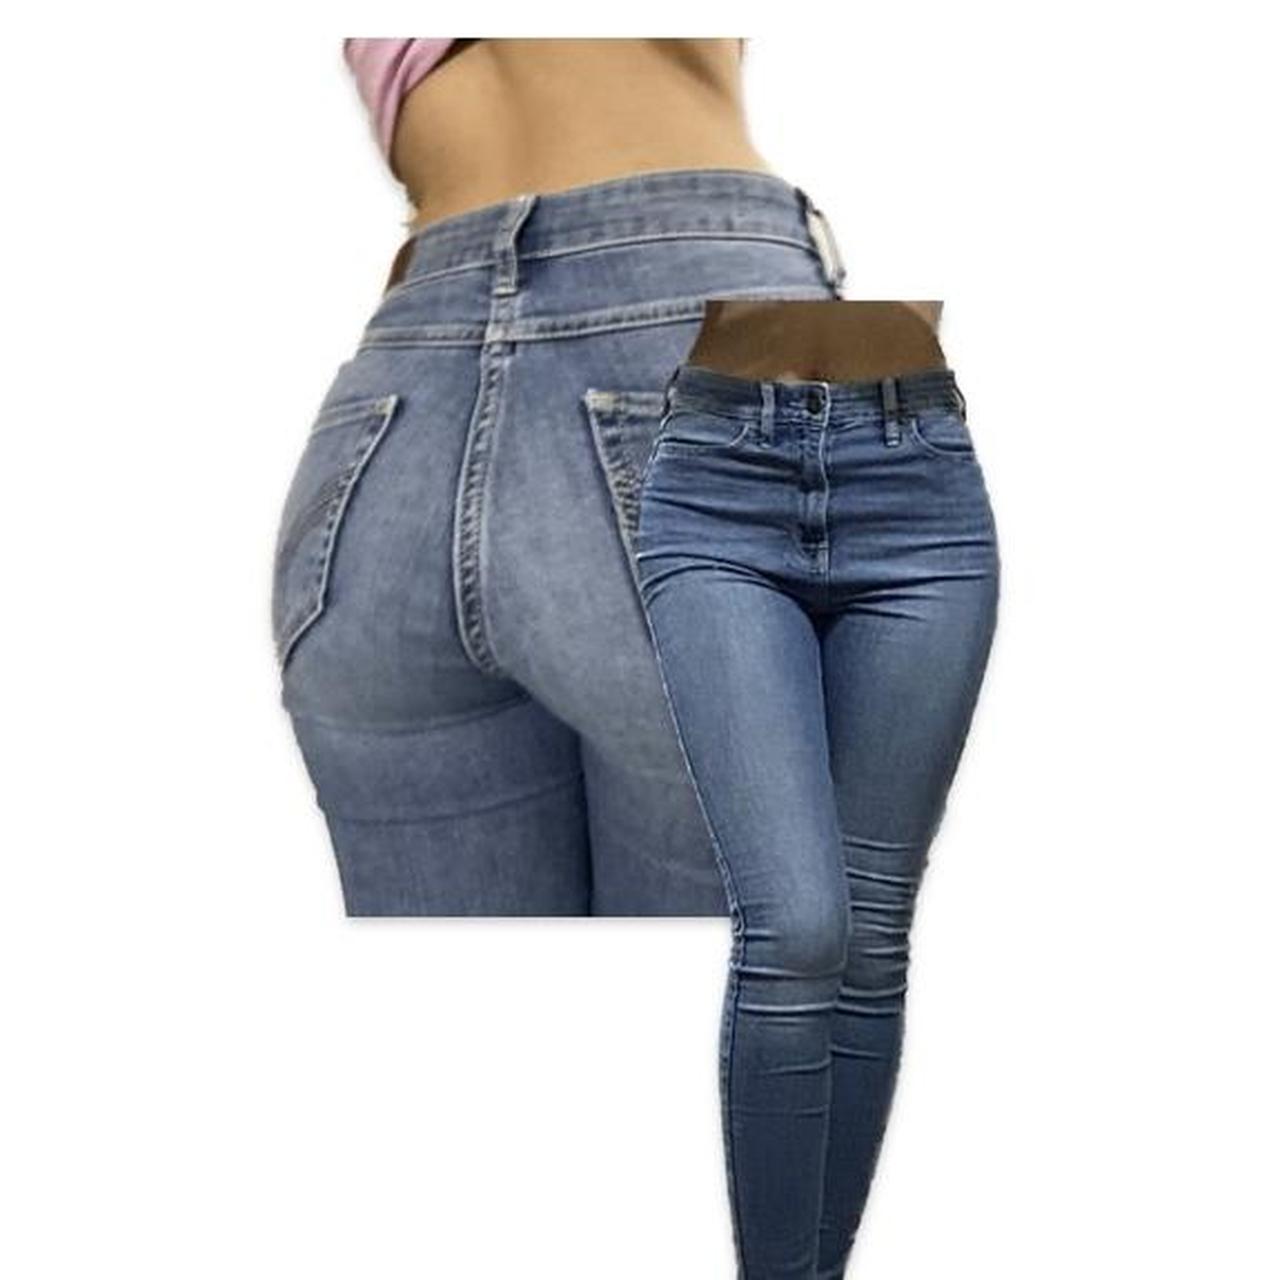 Hollister Ultra High Rise Super Skinny jeans Size 0R - Depop